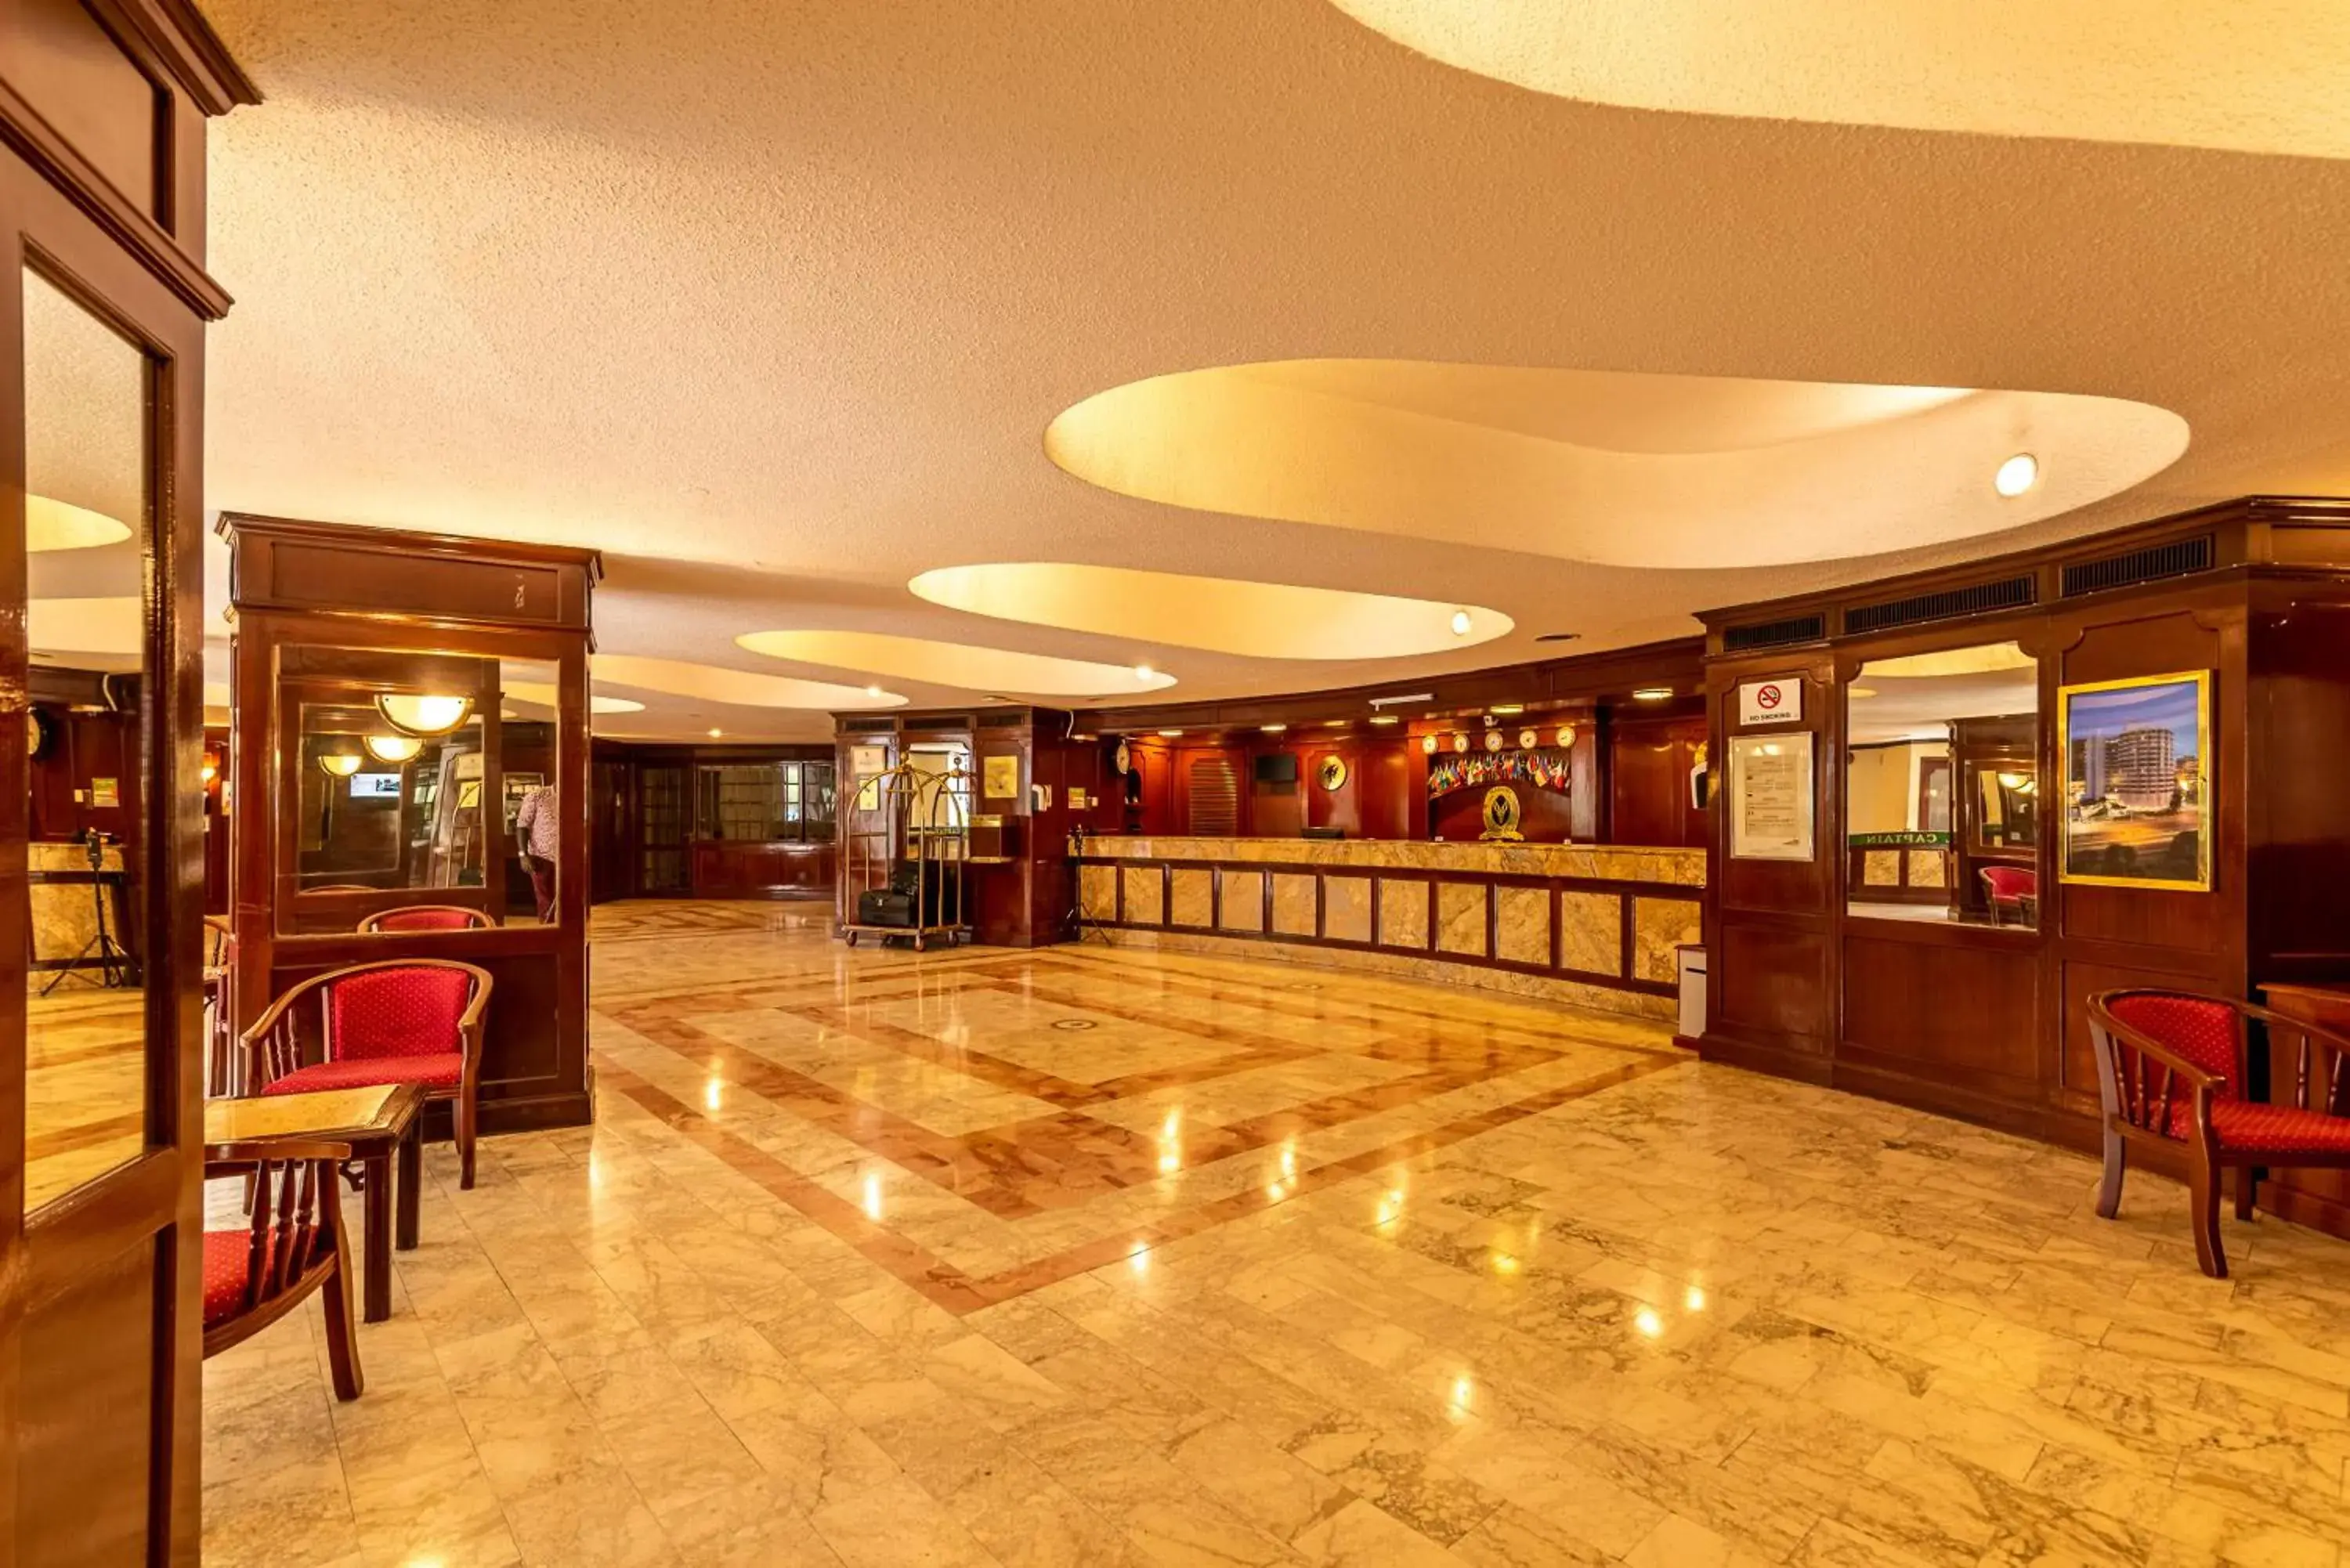 Lobby or reception, Lobby/Reception in Nairobi Safari Club